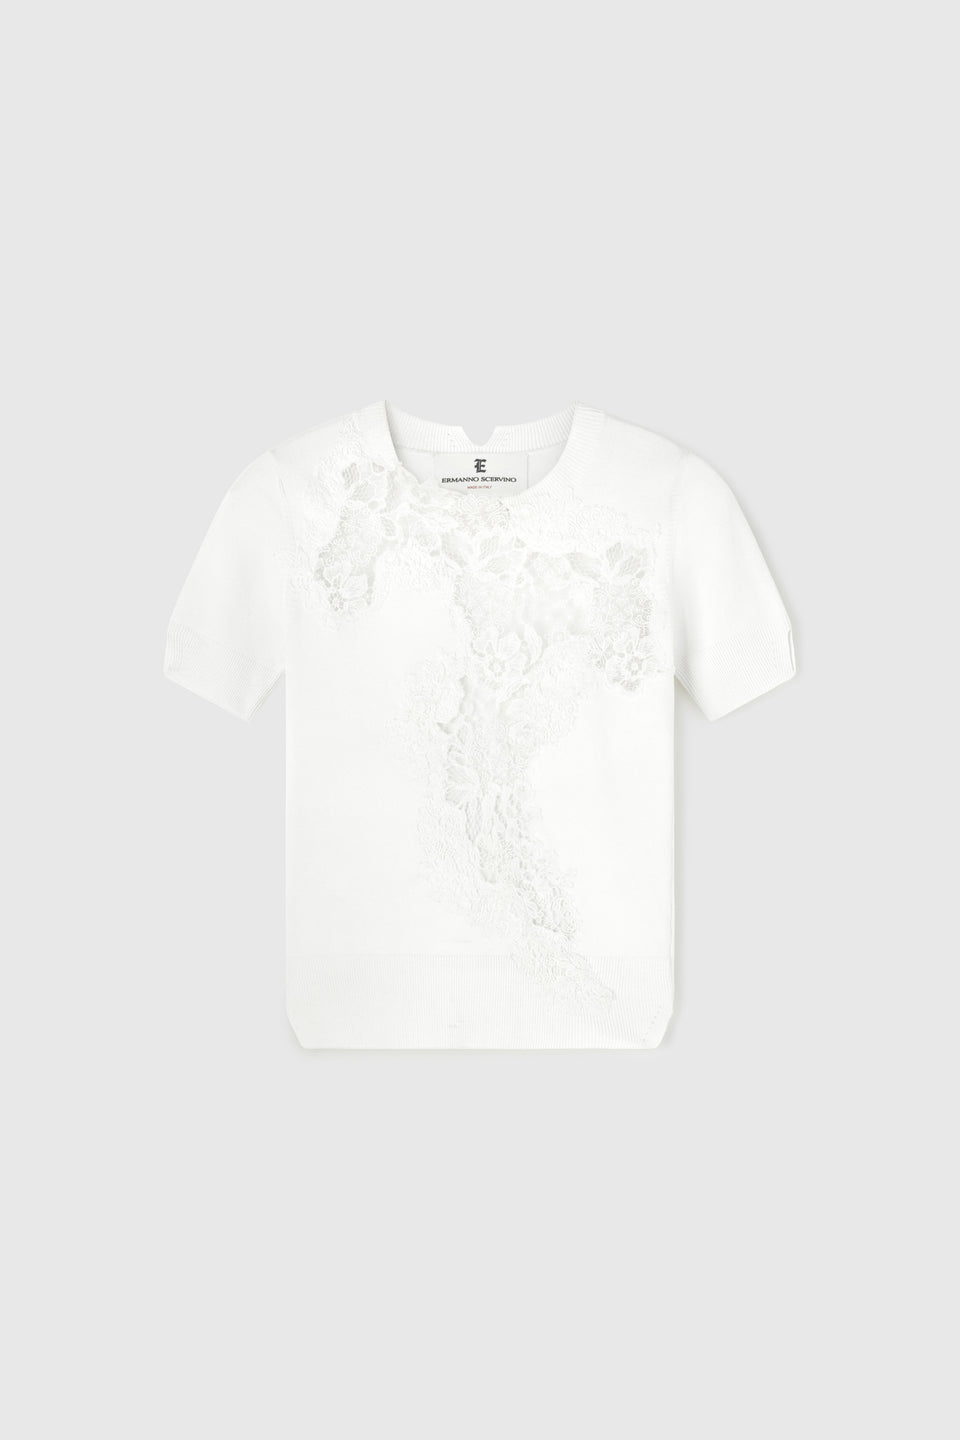 White fabric shirt